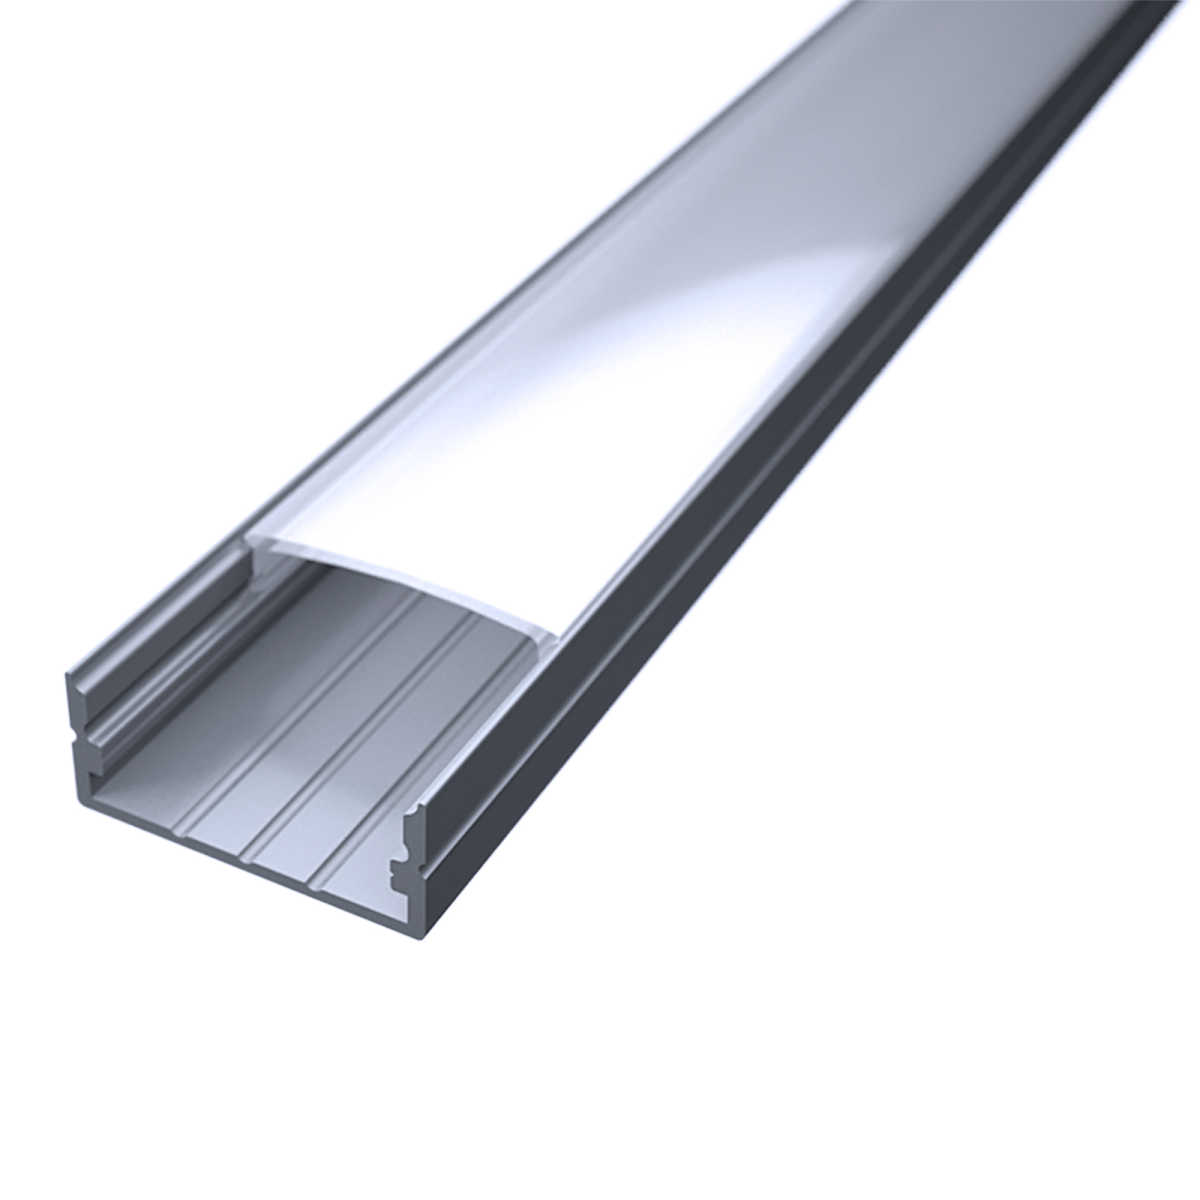 LED Flachprofil "Slim-Line max" | Abdeckung diffus | Zuschnitt auf 111cm |